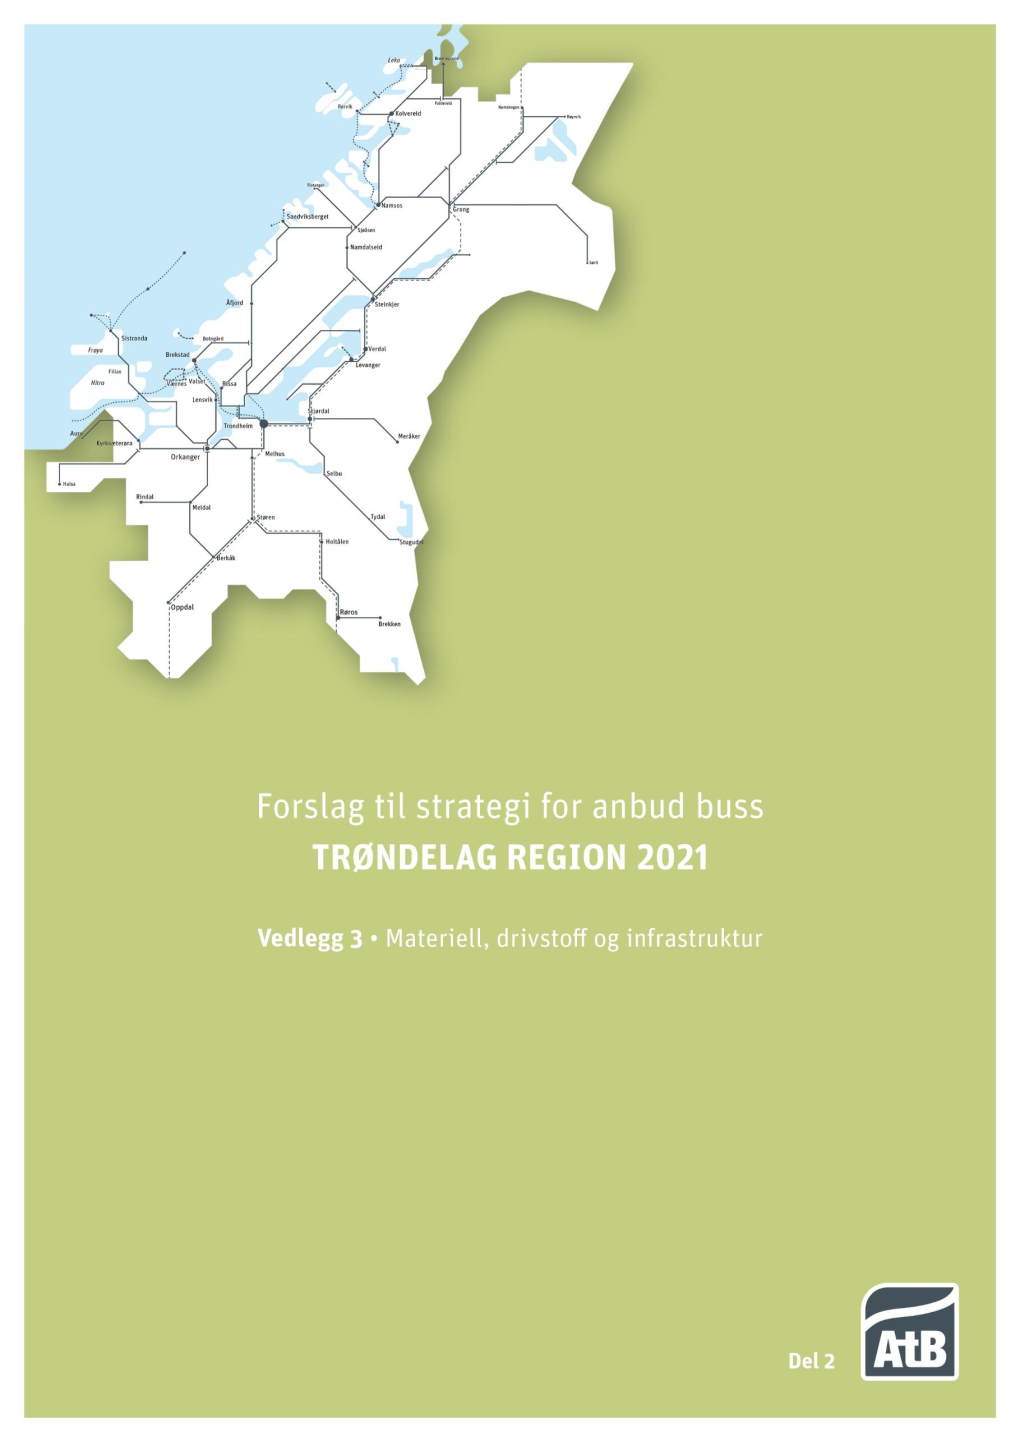 Vedlegg 3: Forslag Til Strategi for Anbud Buss Trøndelag Region 2021 (Regionanbud 2021) Materiell, Drivstoff Og Infrastruktur